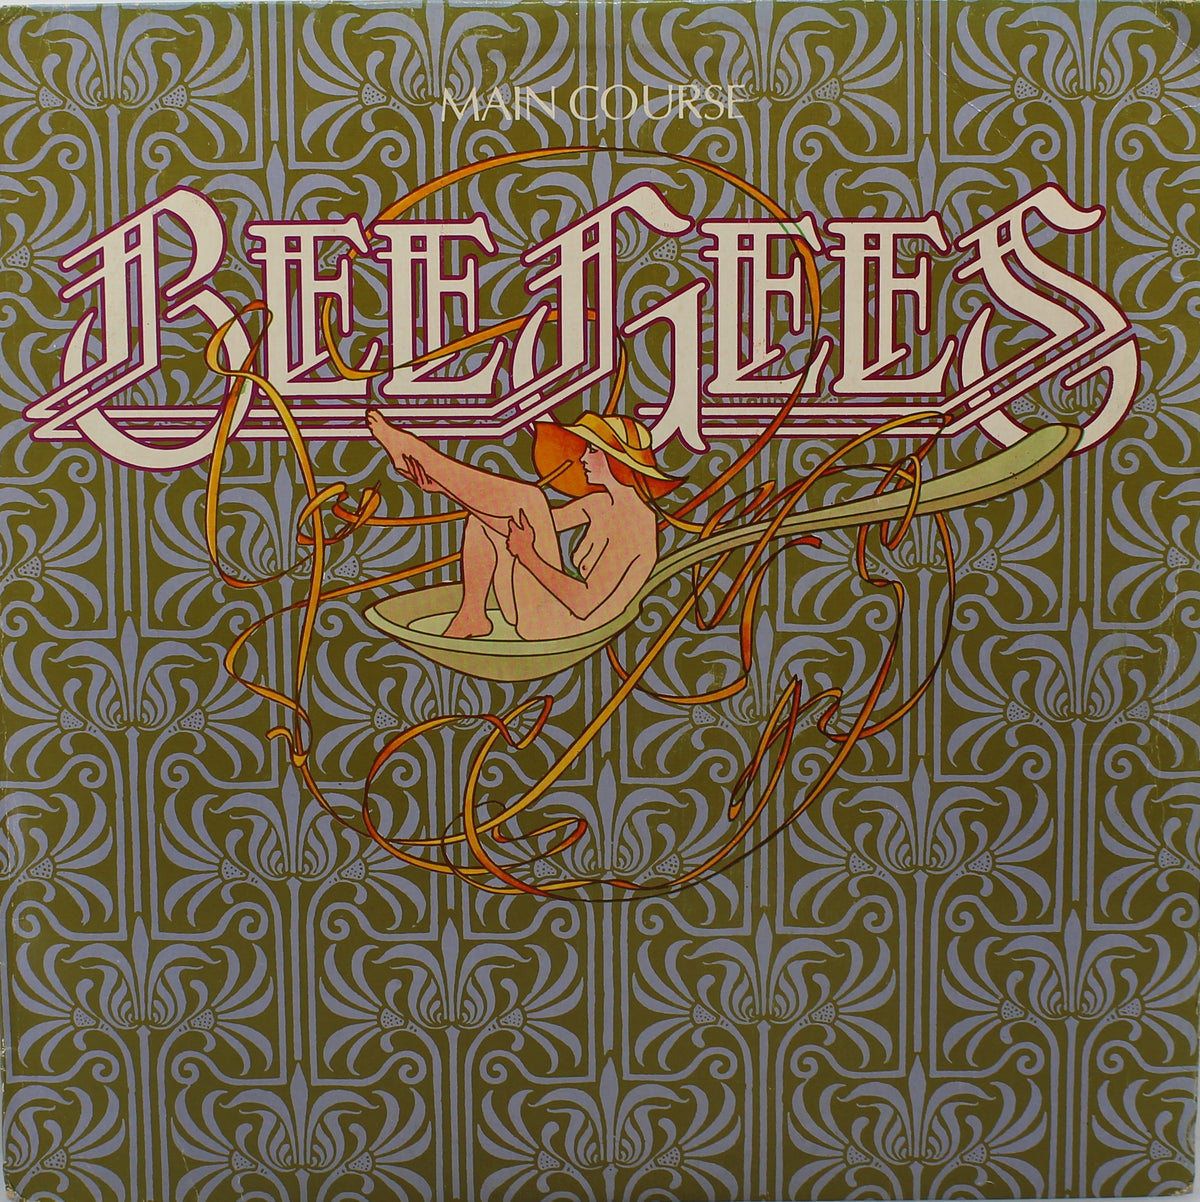 Bee Gees – Main Course, Vinyl, LP, Album, Australasia